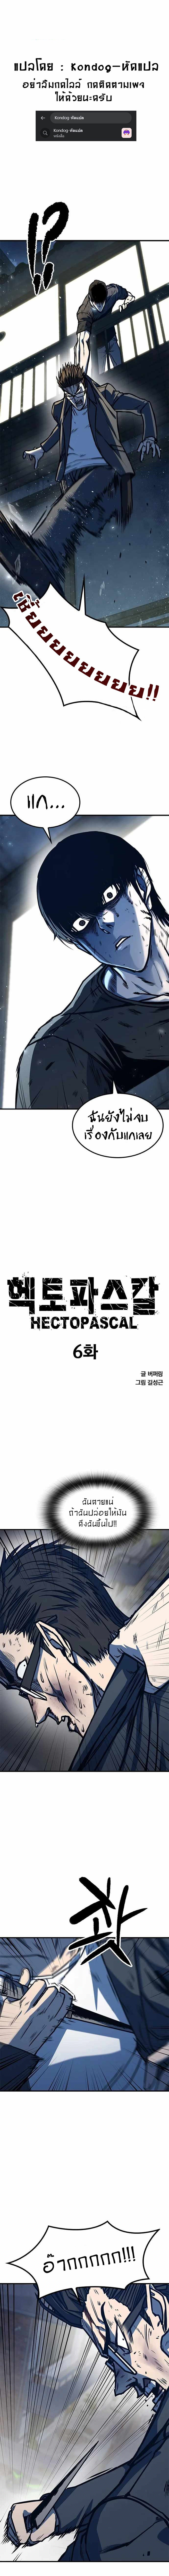 Hectopascal-6-01.jpg